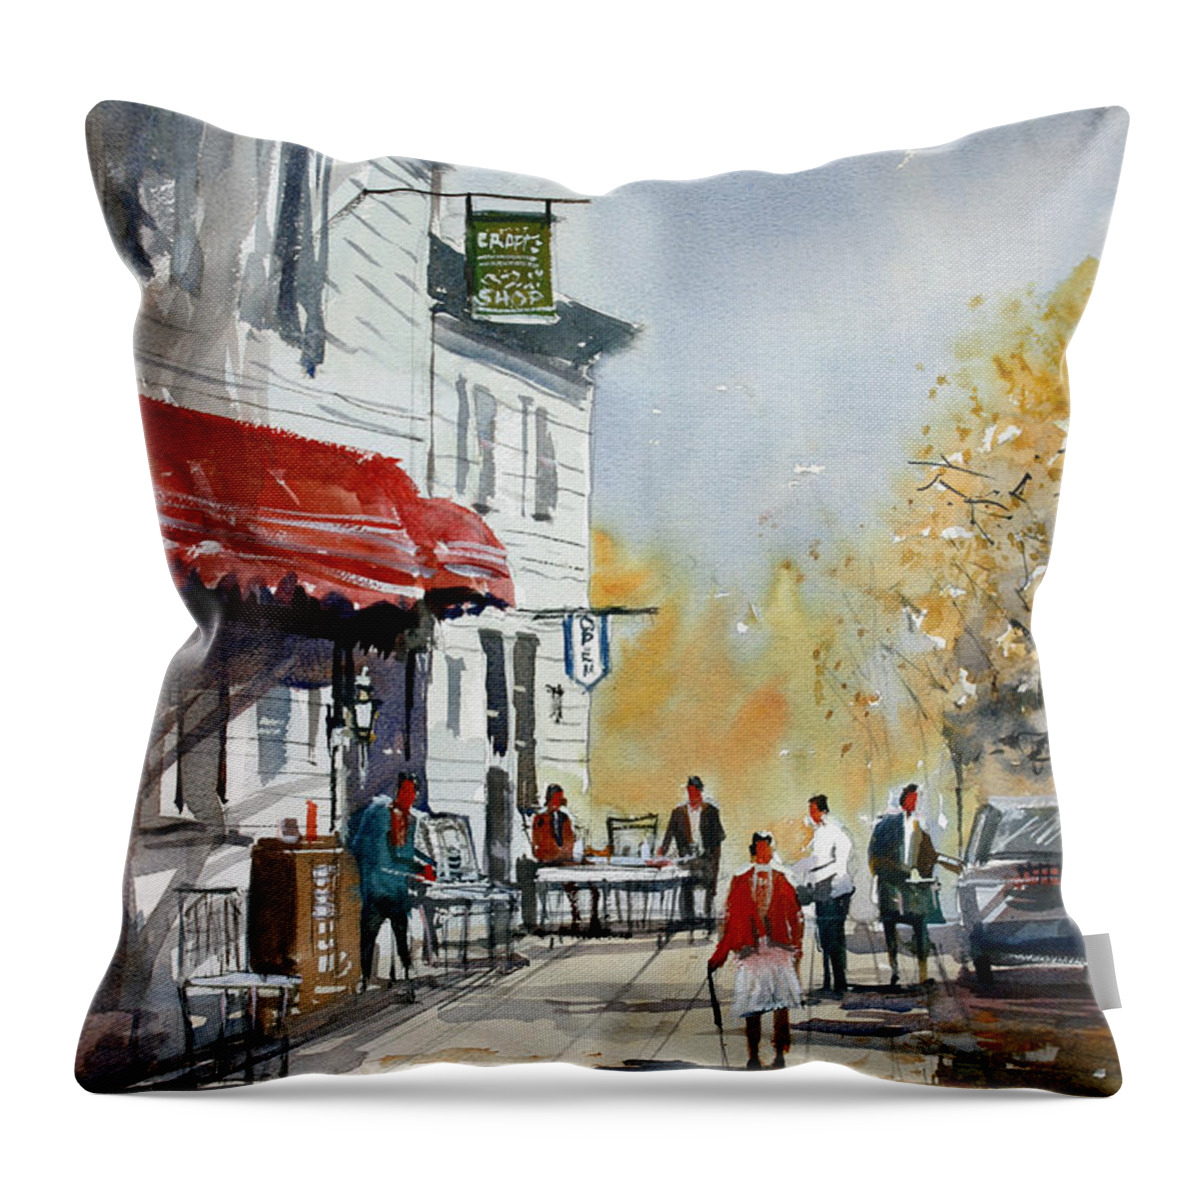 Ryan Radke Throw Pillow featuring the painting Sunlit Sidewalk - Neshkoro by Ryan Radke